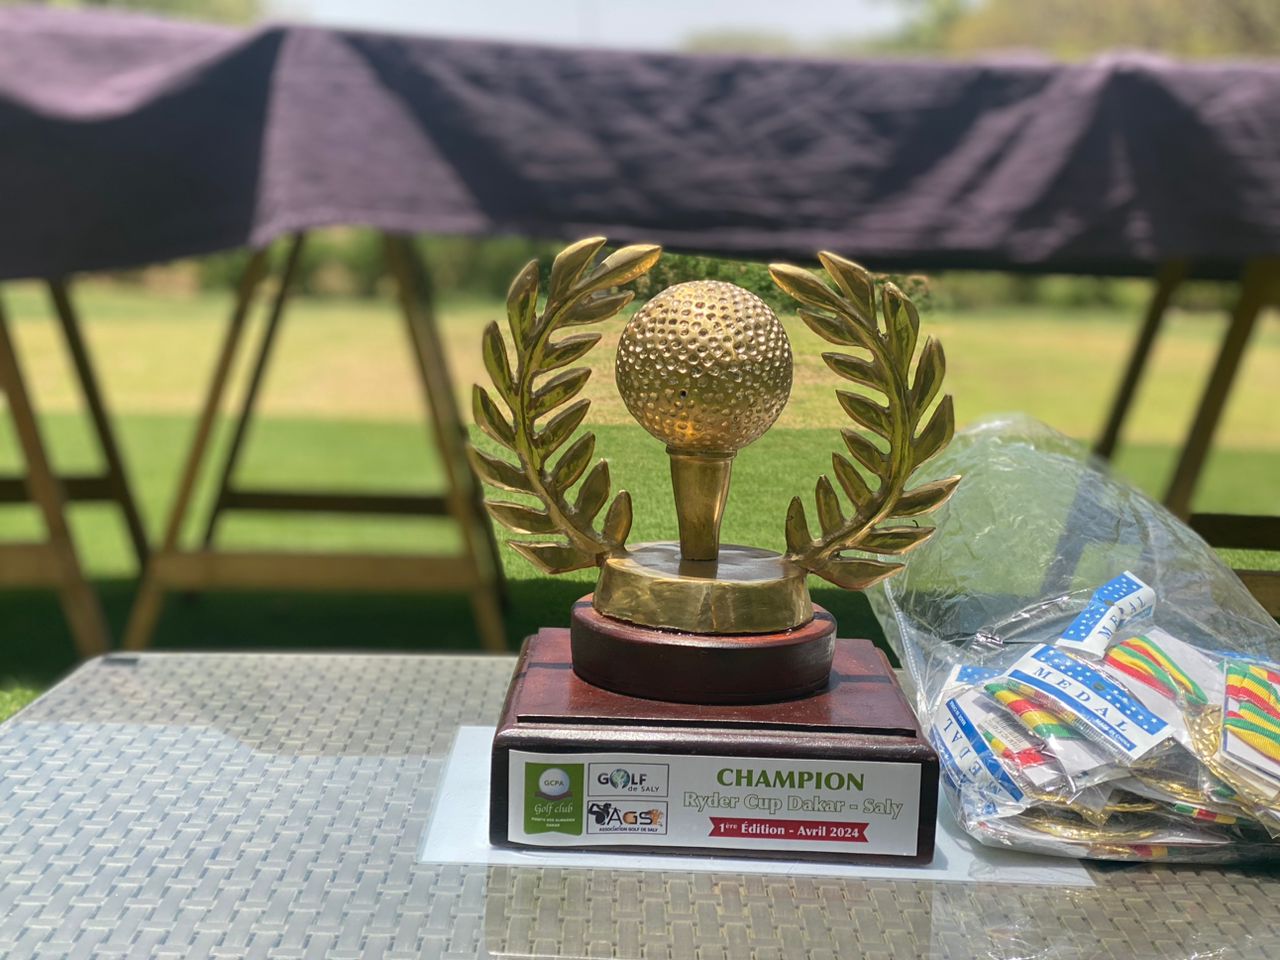 Golf : Première édition du tournoi Ryder Cup Dakar-Saly, lancée ce week-end